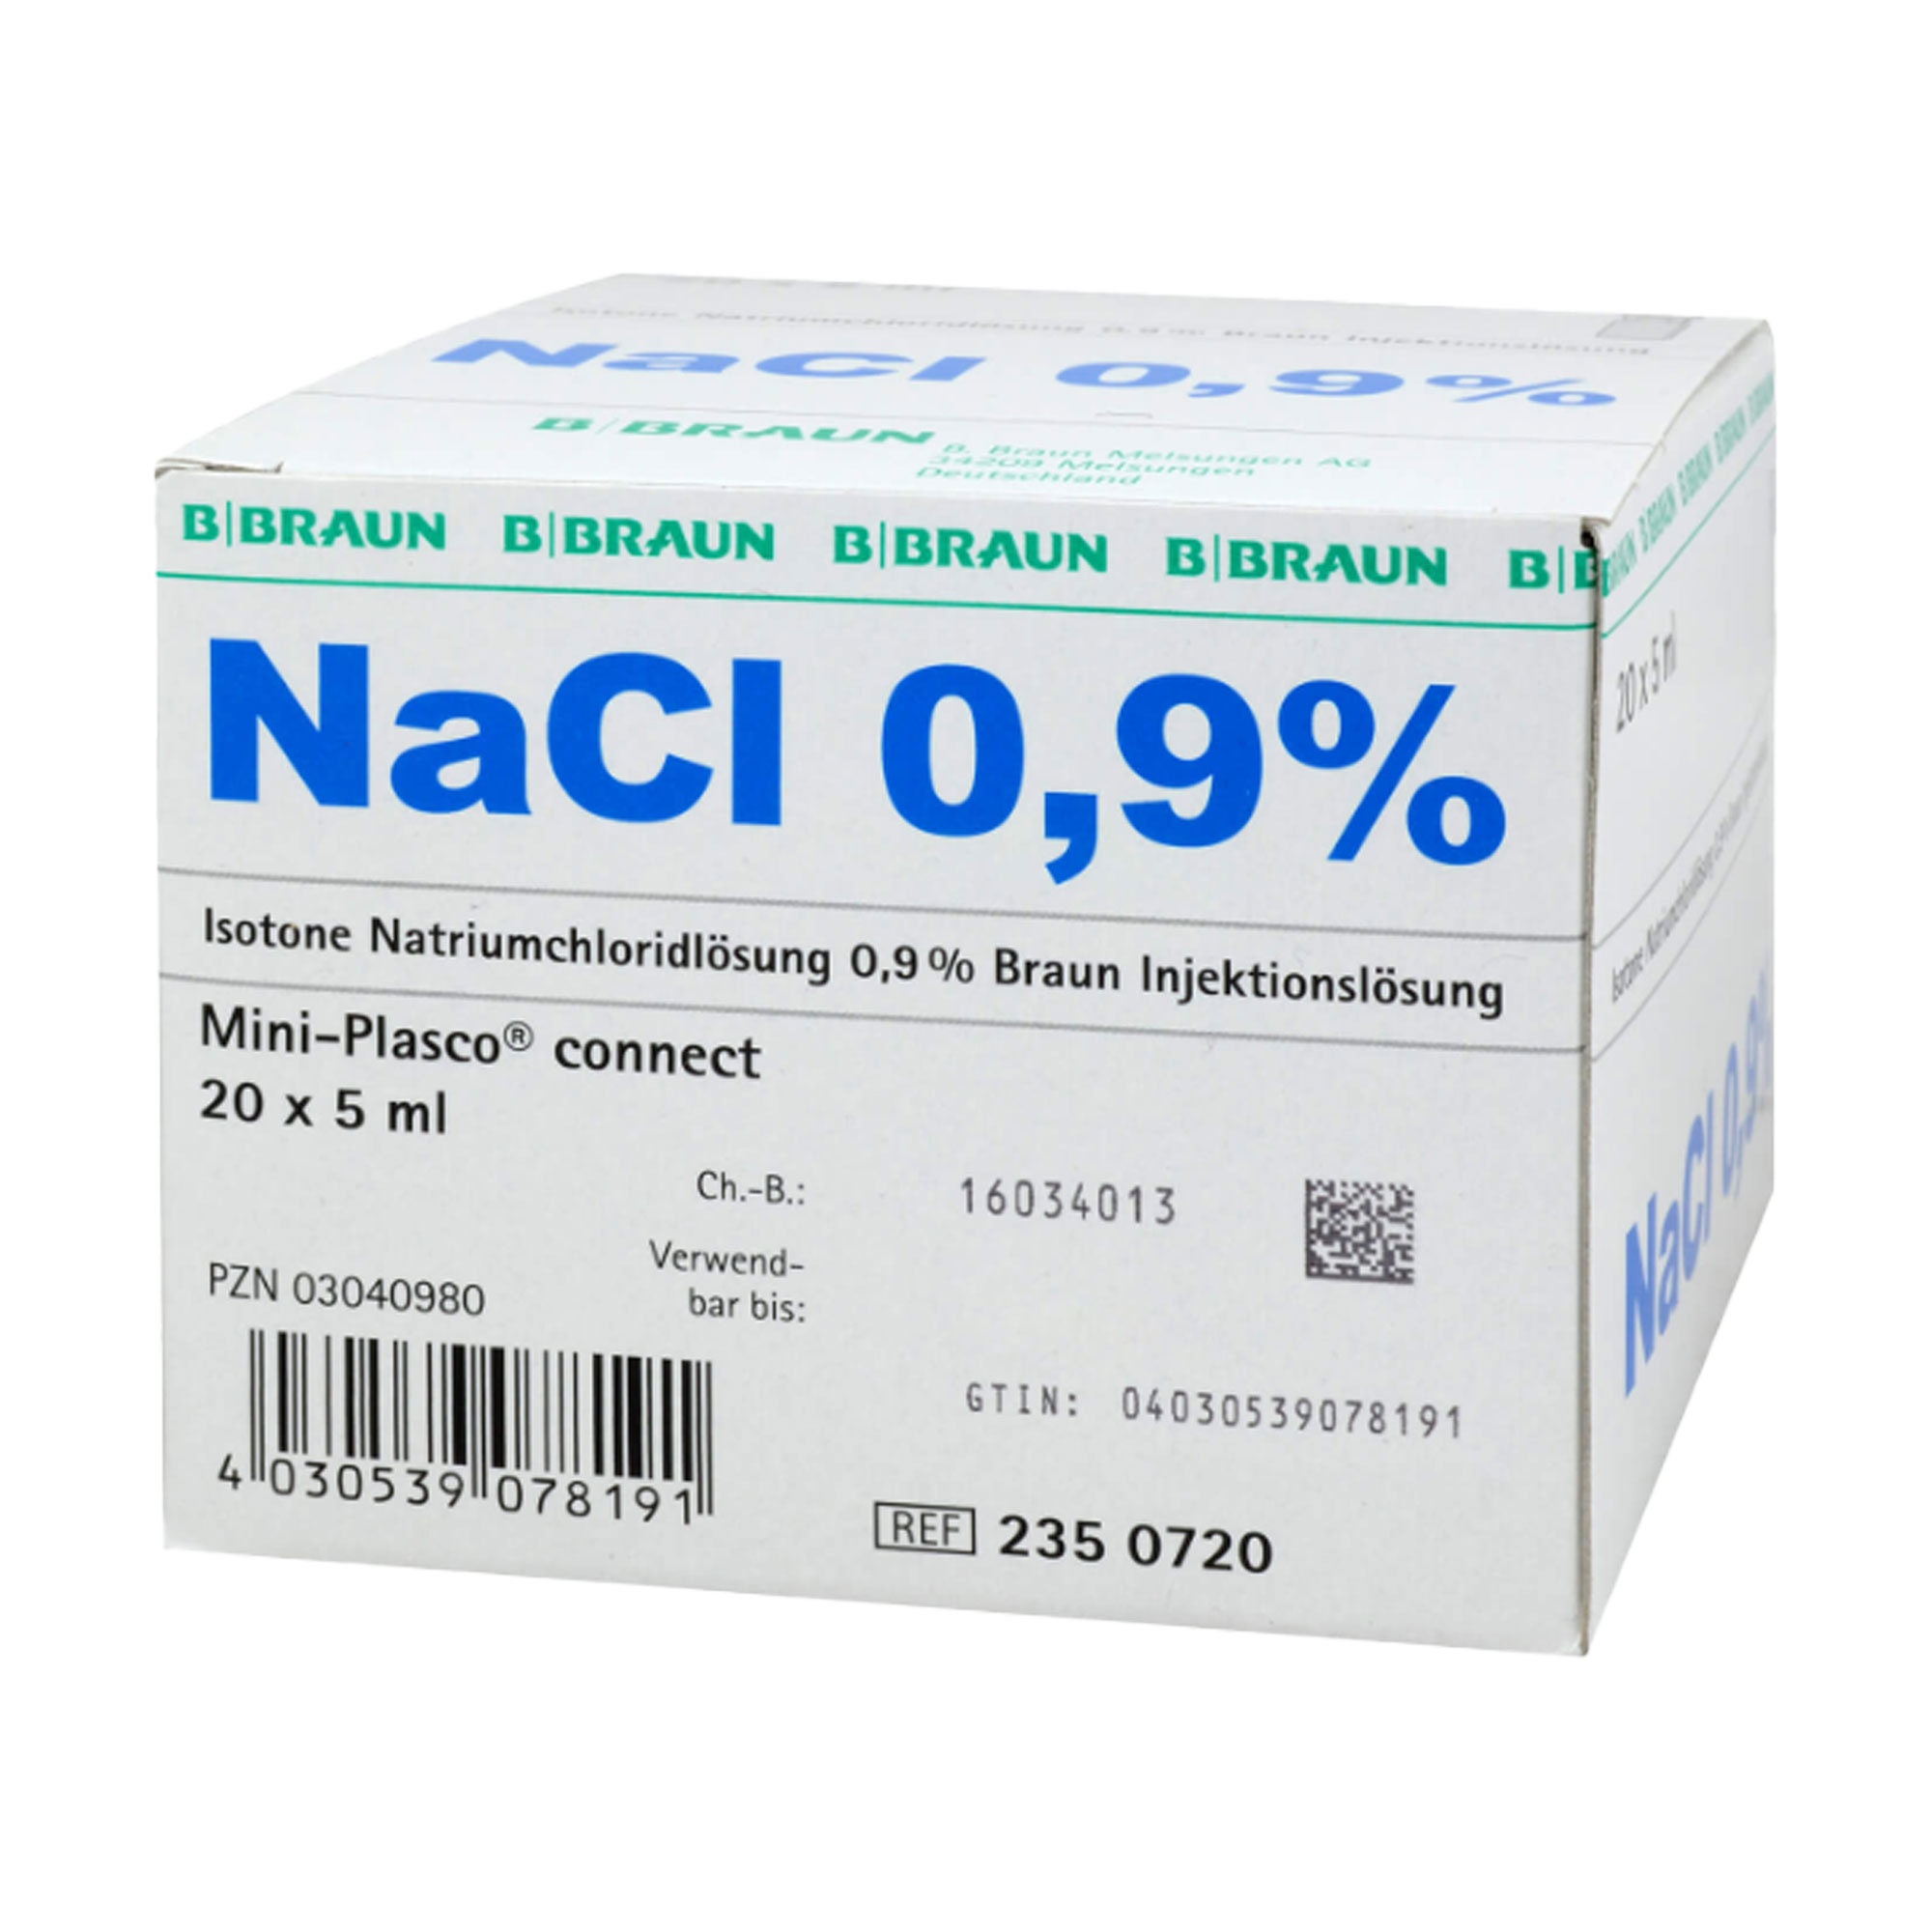 Isotone Natriumchloridlösung. Zum Auflösen oder Verdünnen von Arzneimitteln, die Sie als Injektion erhalten.